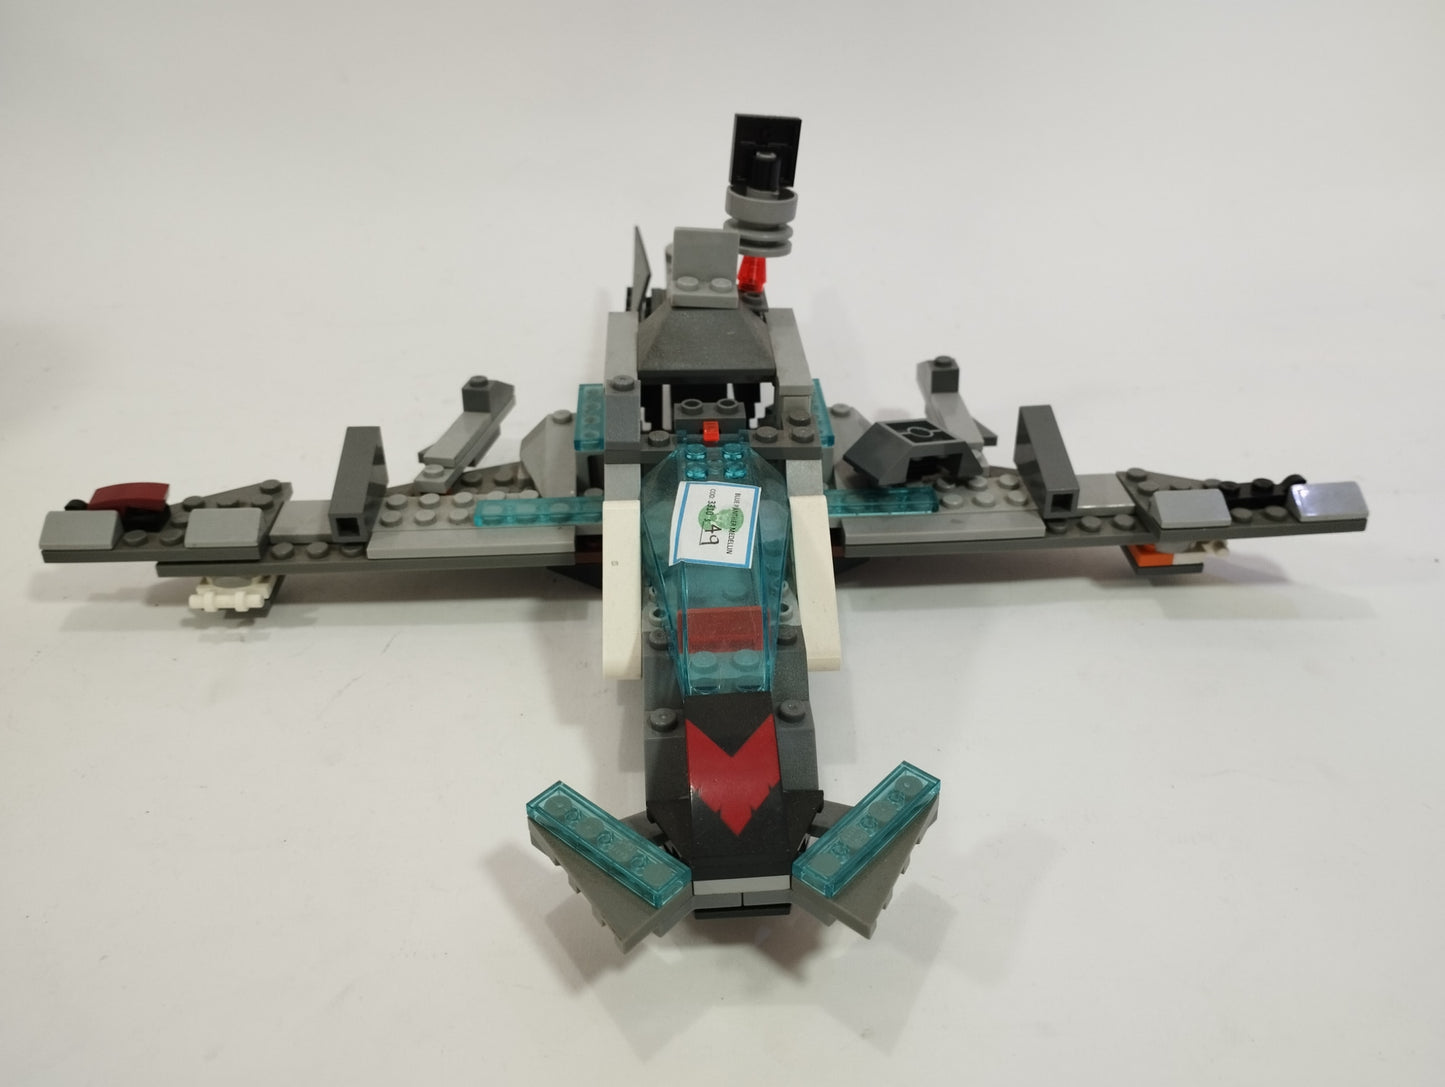 Lego nave con lego gris